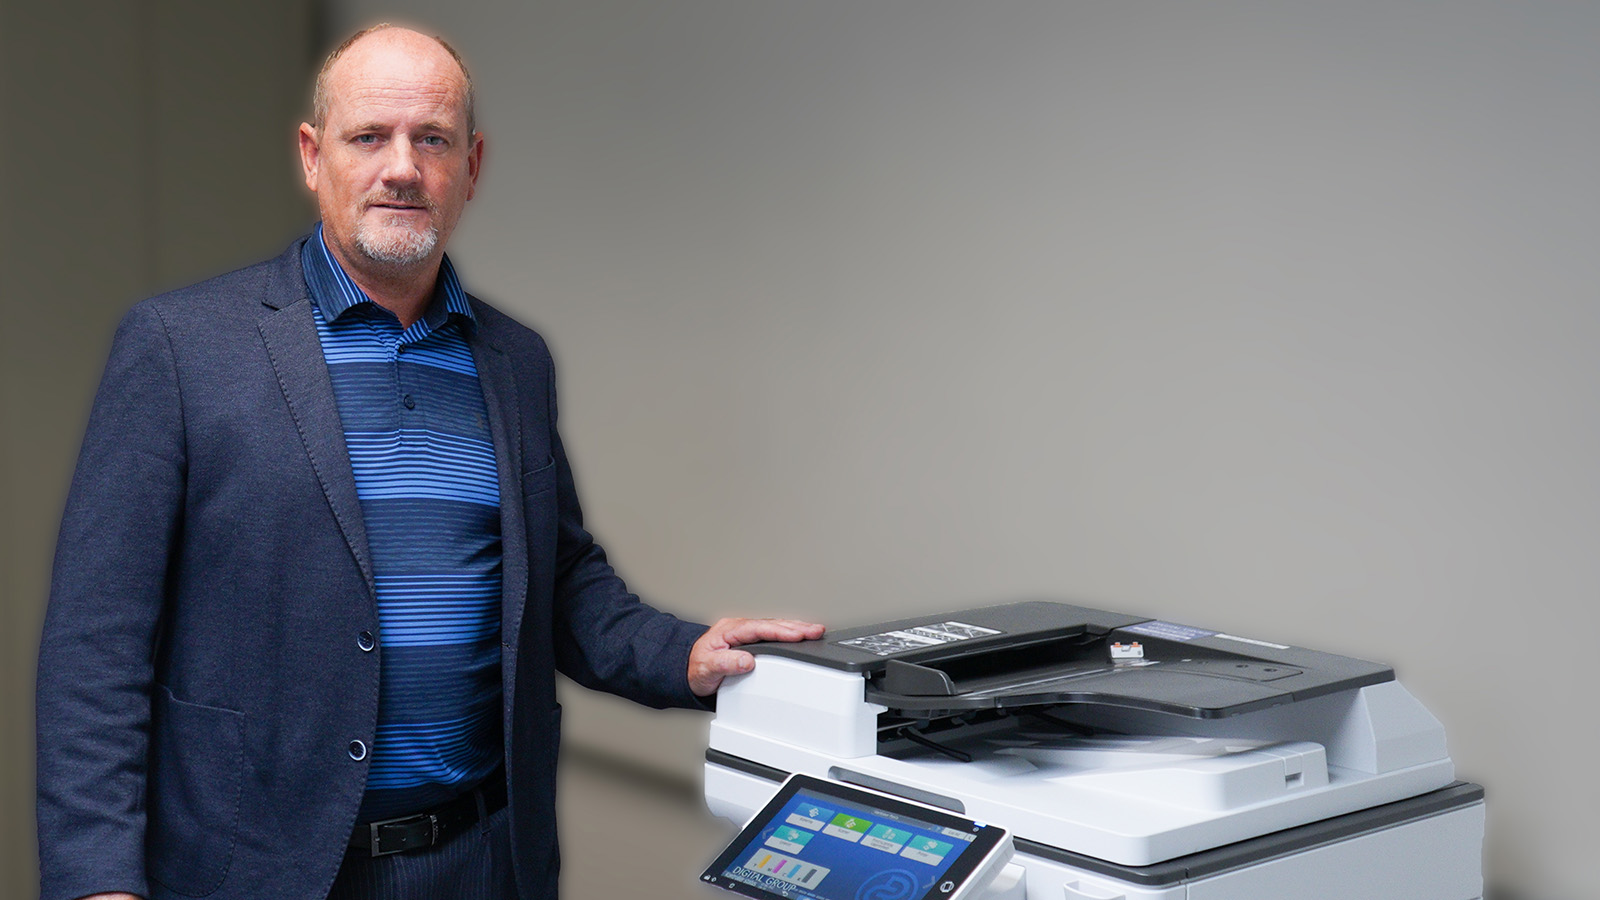 Medarbejder poserer med kopimaskine